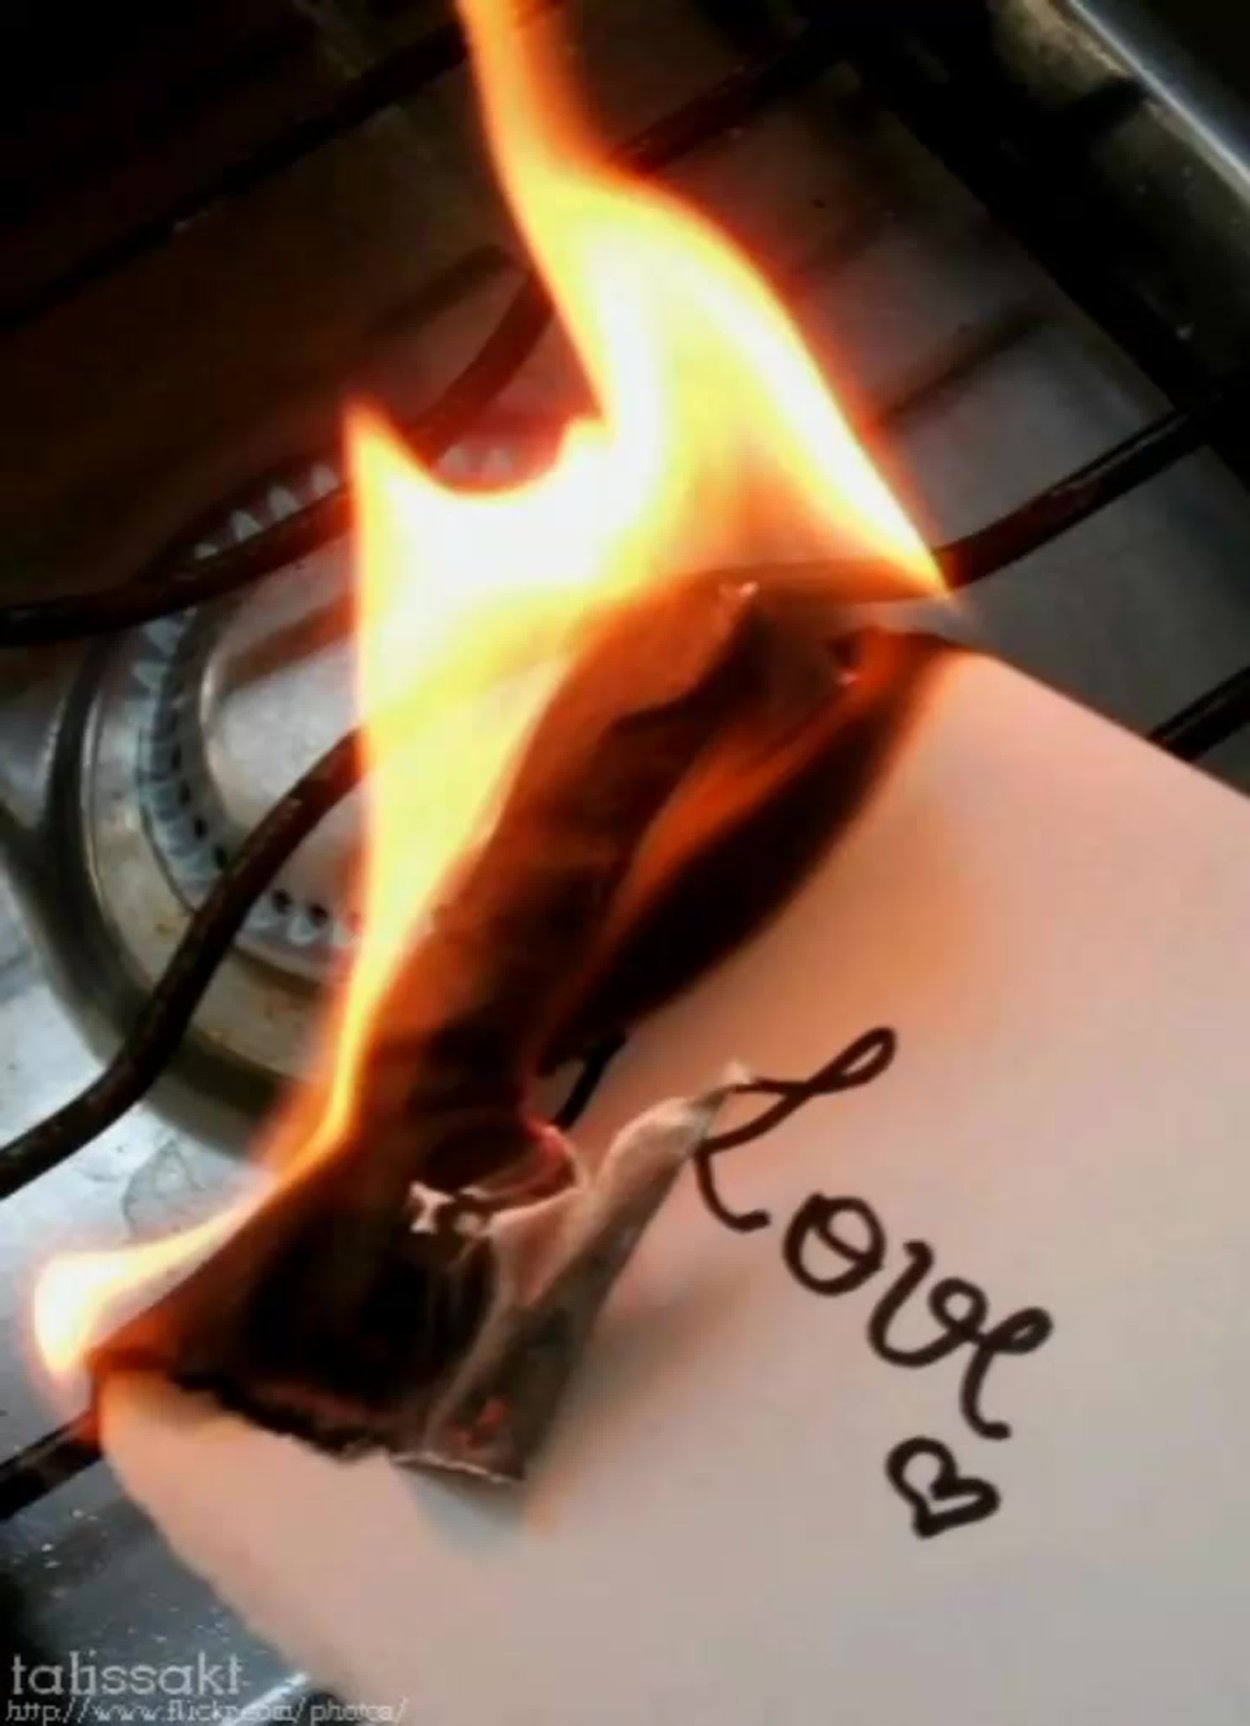 Любовь и сжигание. Горит любовь. Красиво горит. Сгораю от любви. Любовь сжигает.